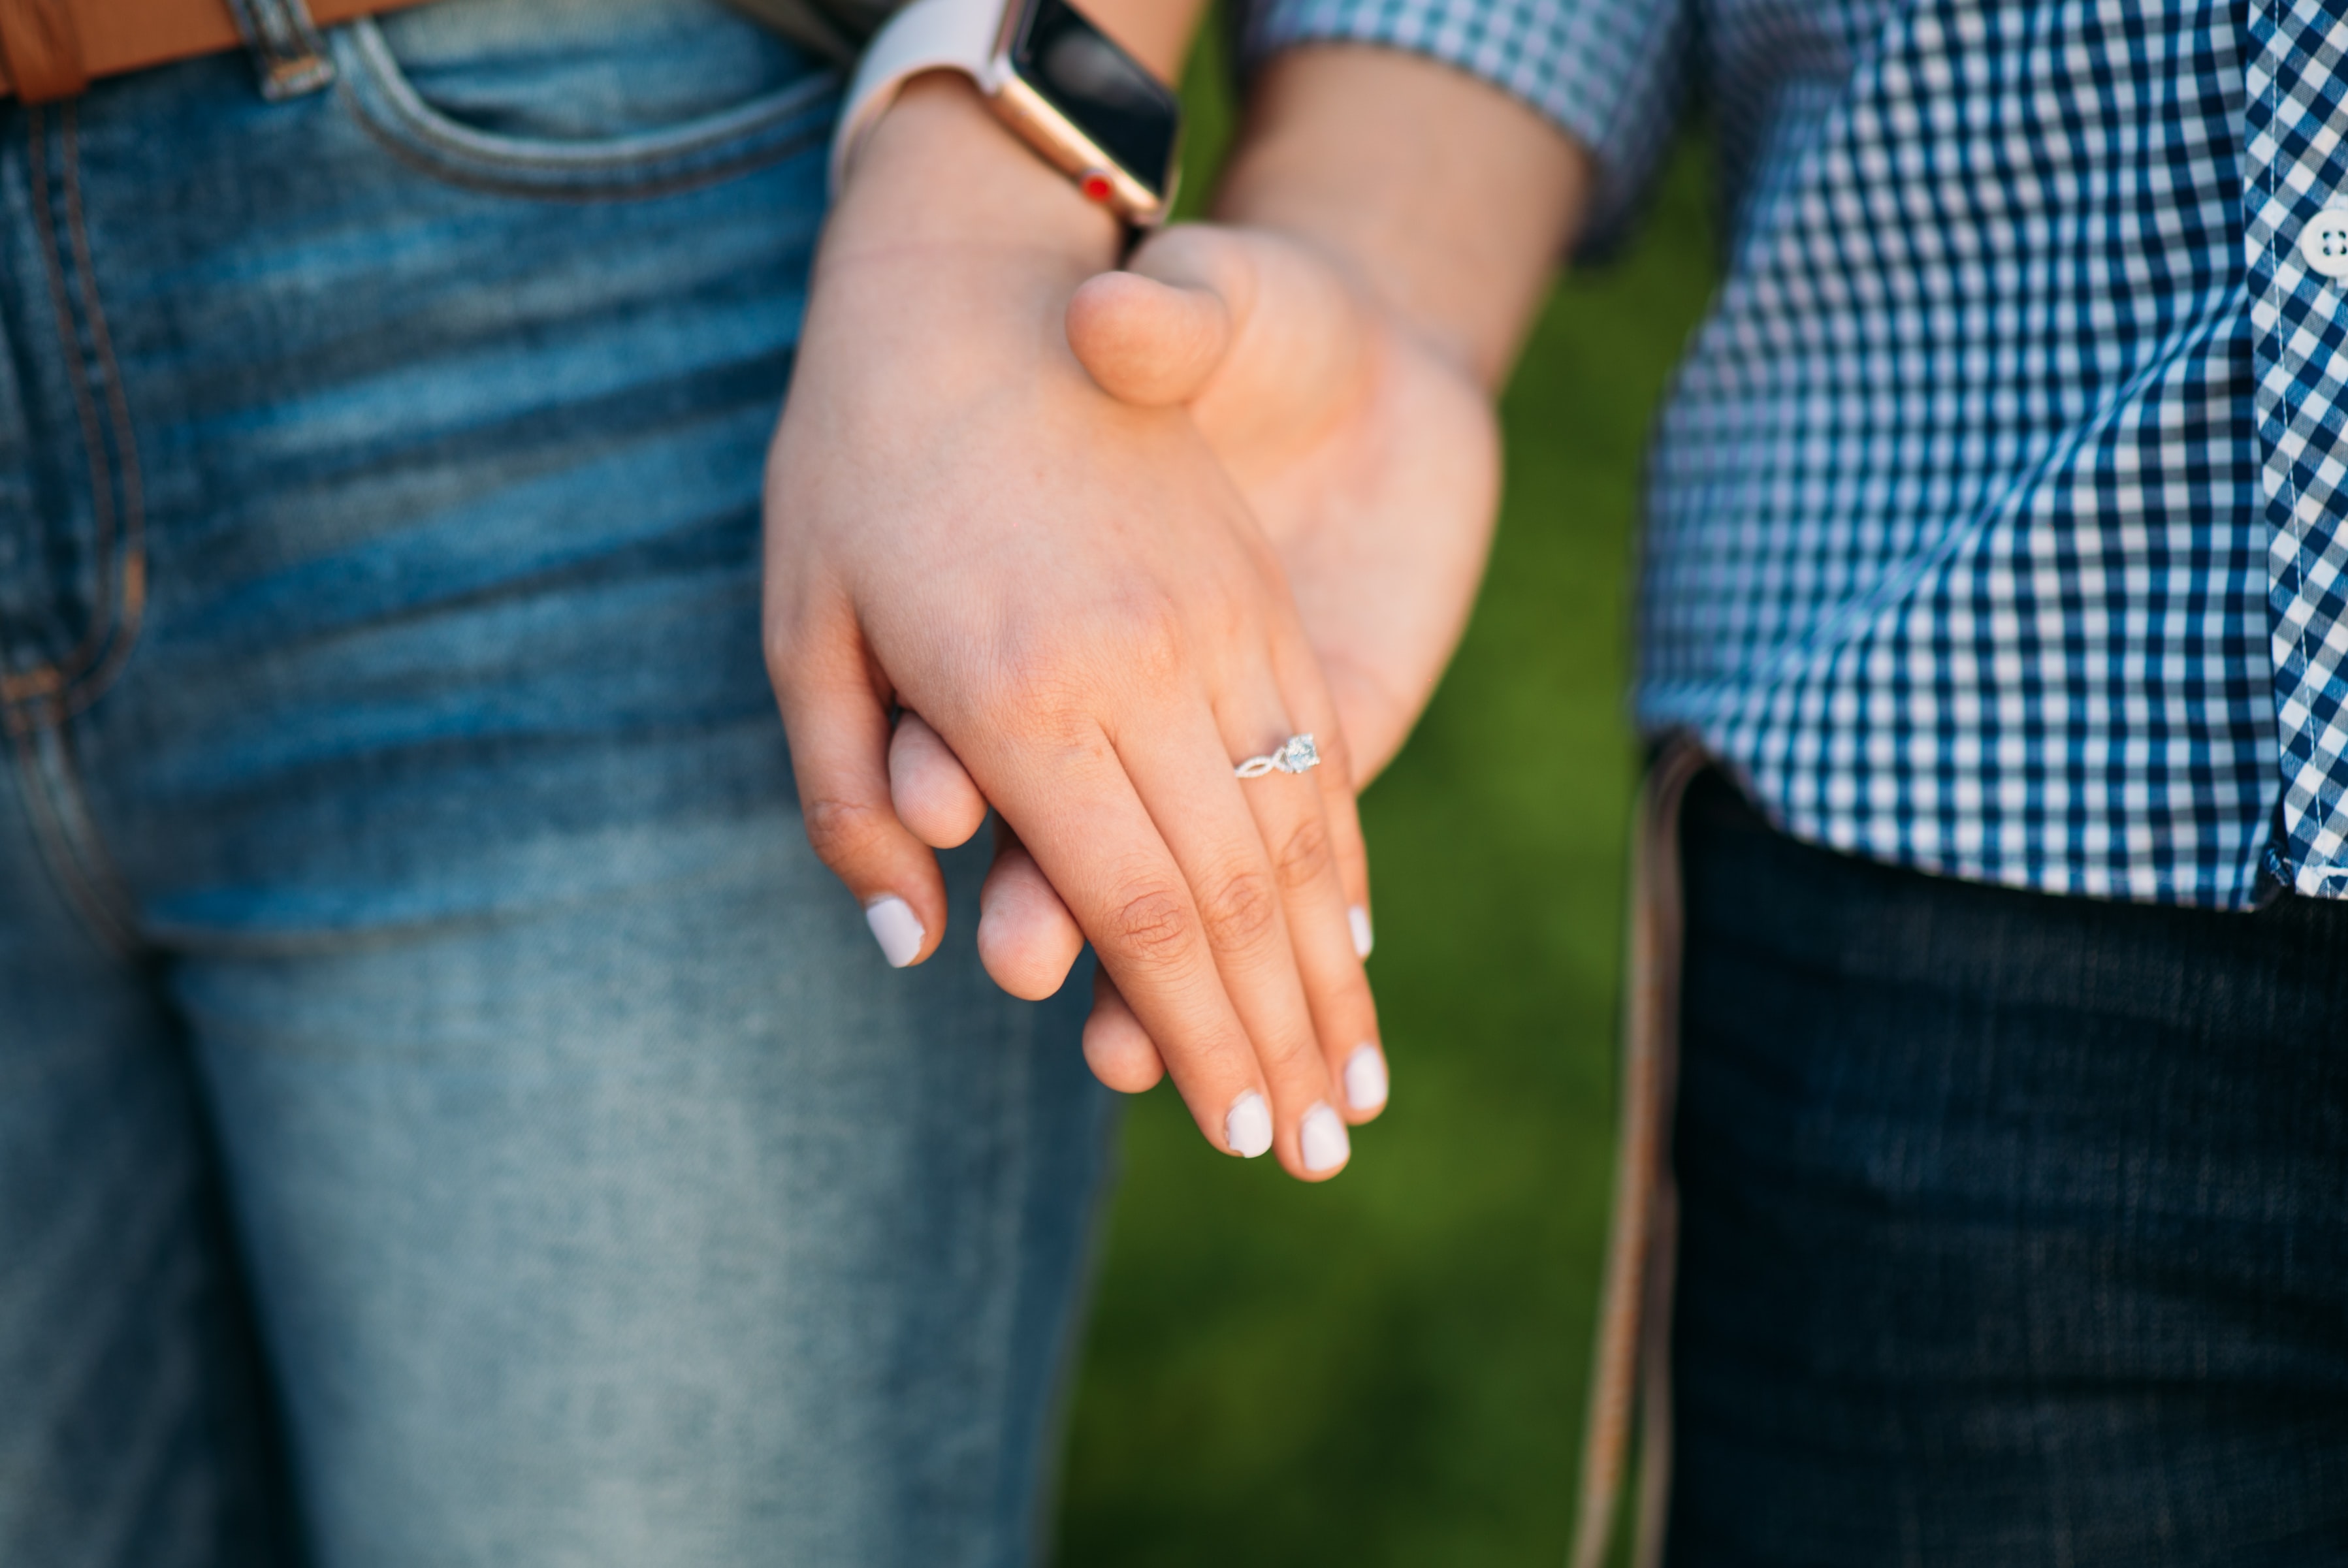 Kérdések, amikről jó a házasság előtt beszélni! – 2. rész